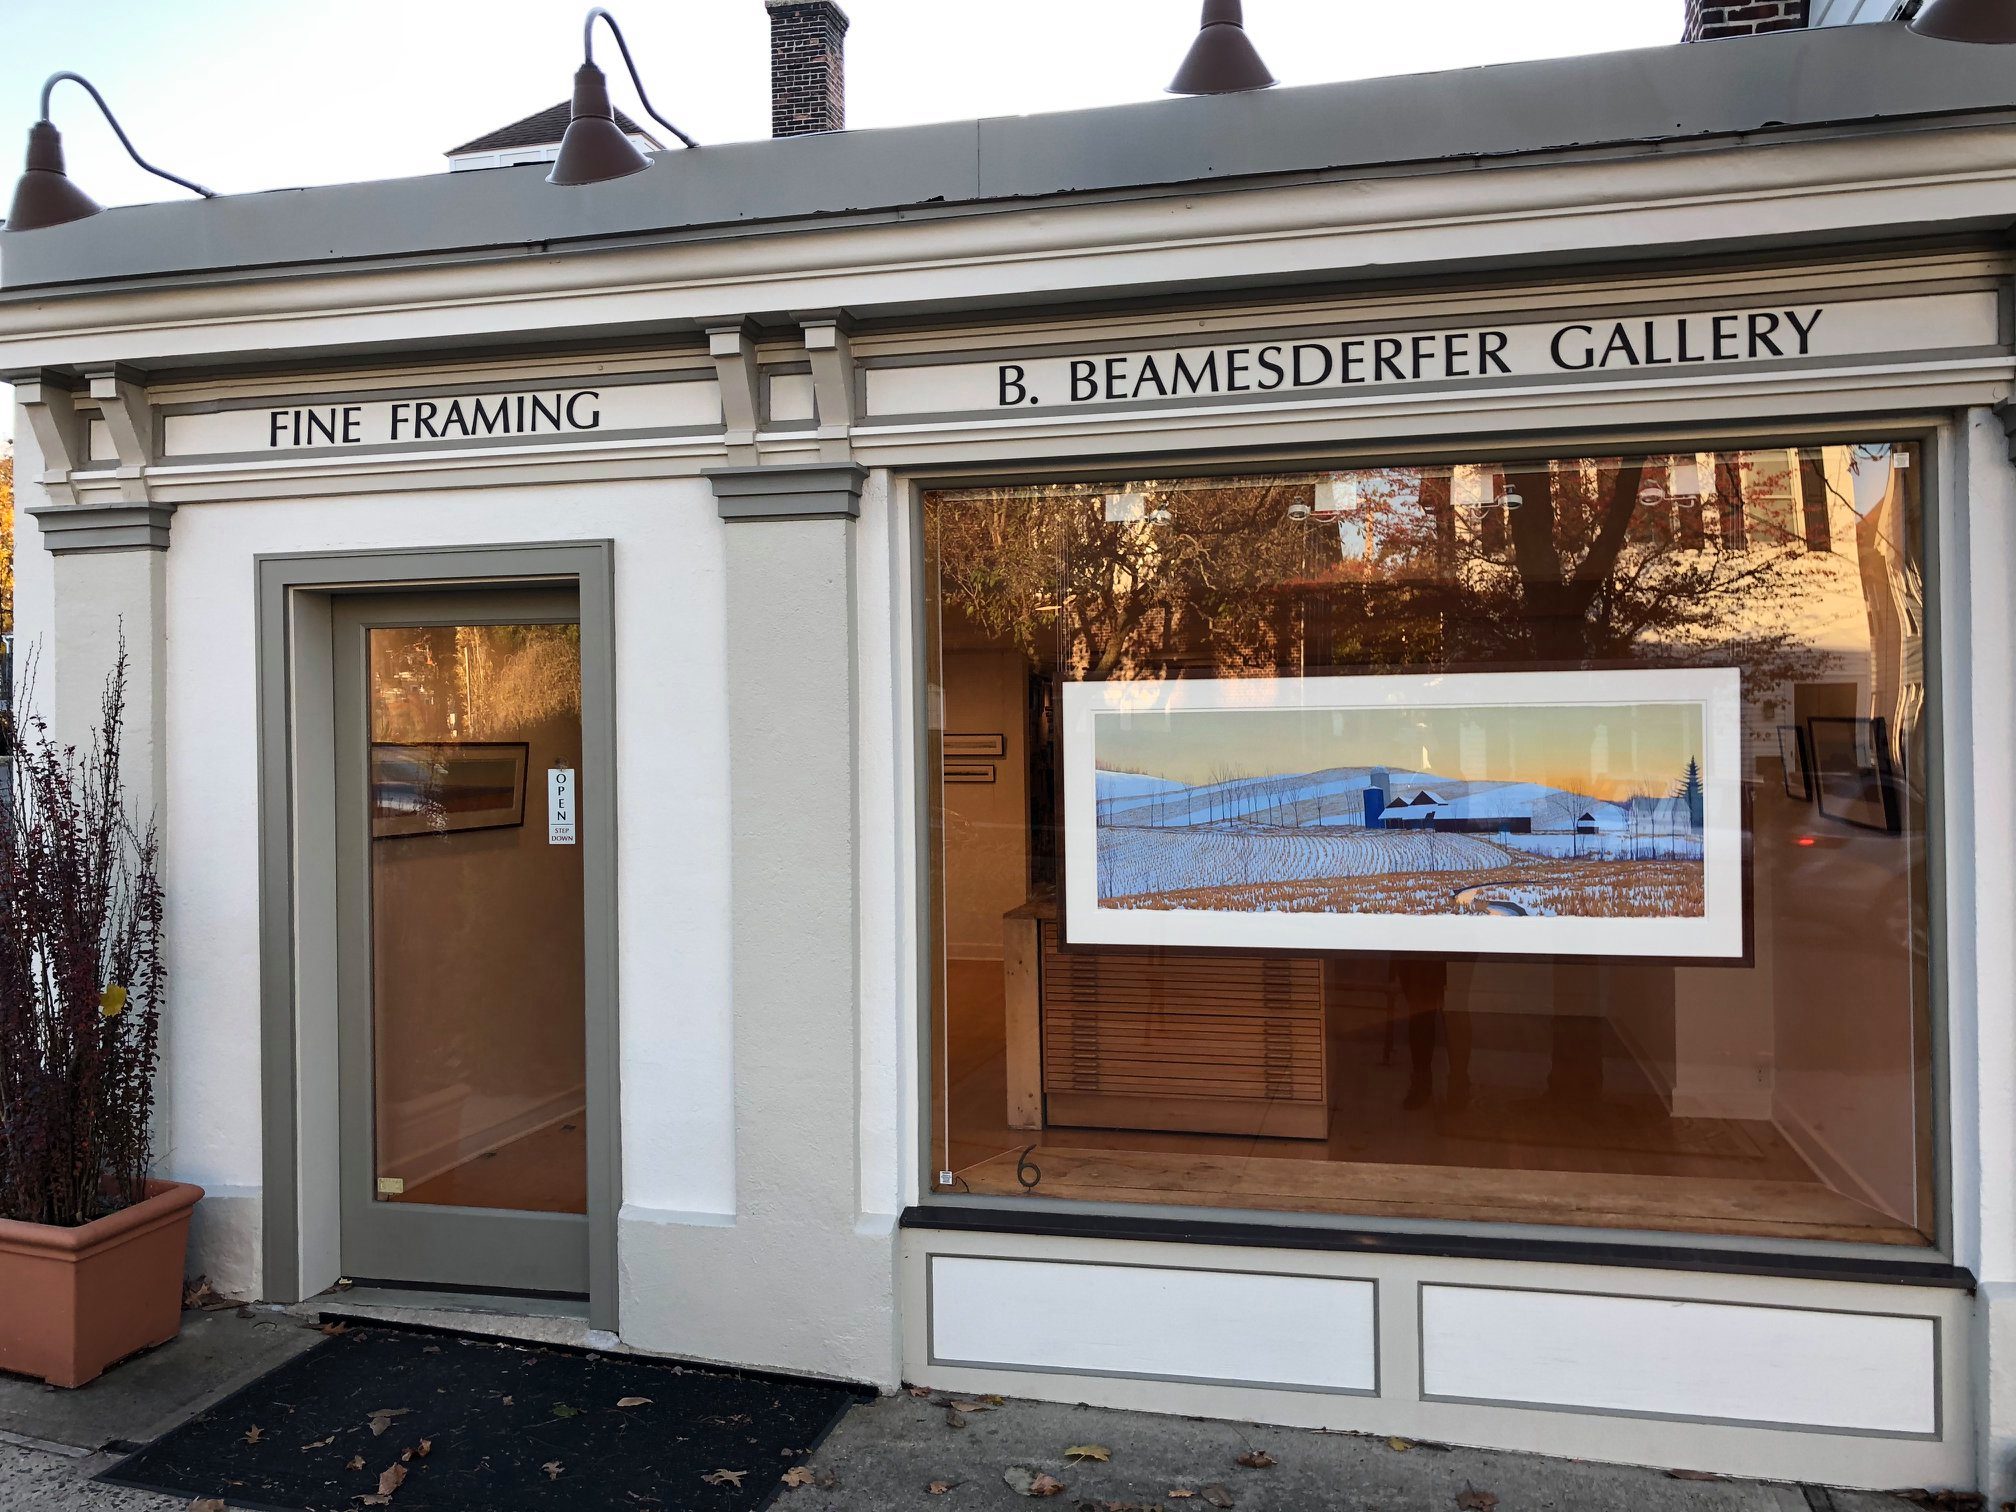 Beamesderfer Gallery